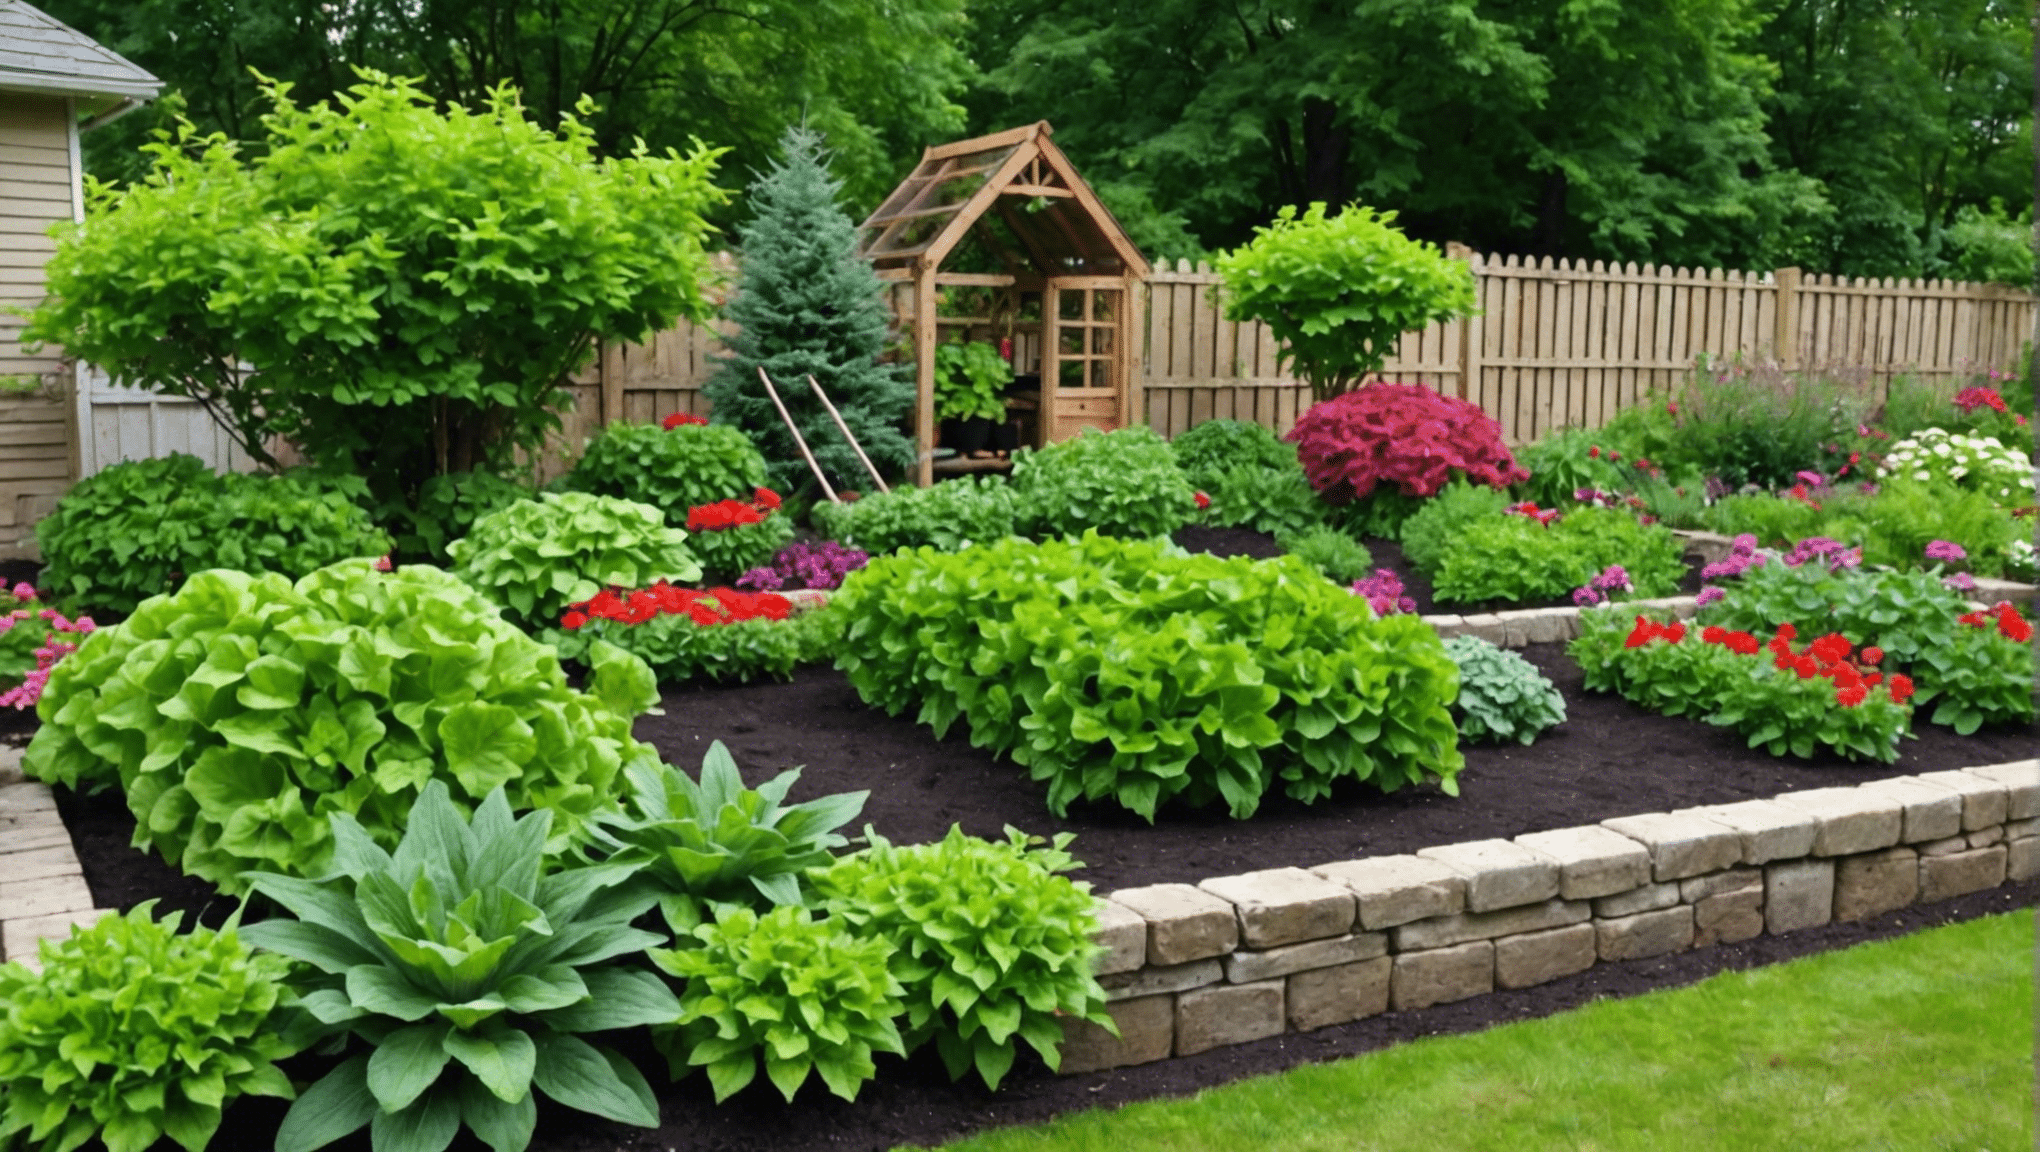 descubra dicas práticas e econômicas para jardinagem em seu espaço com nossas ideias de jardinagem acessíveis. comece hoje mesmo a criar uma horta próspera e econômica.